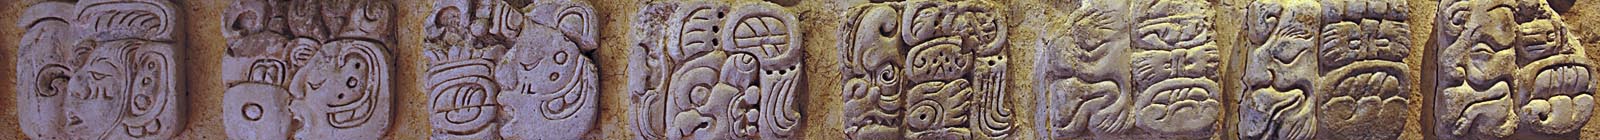 Maya Hieroglyphs in Palenque - Banner